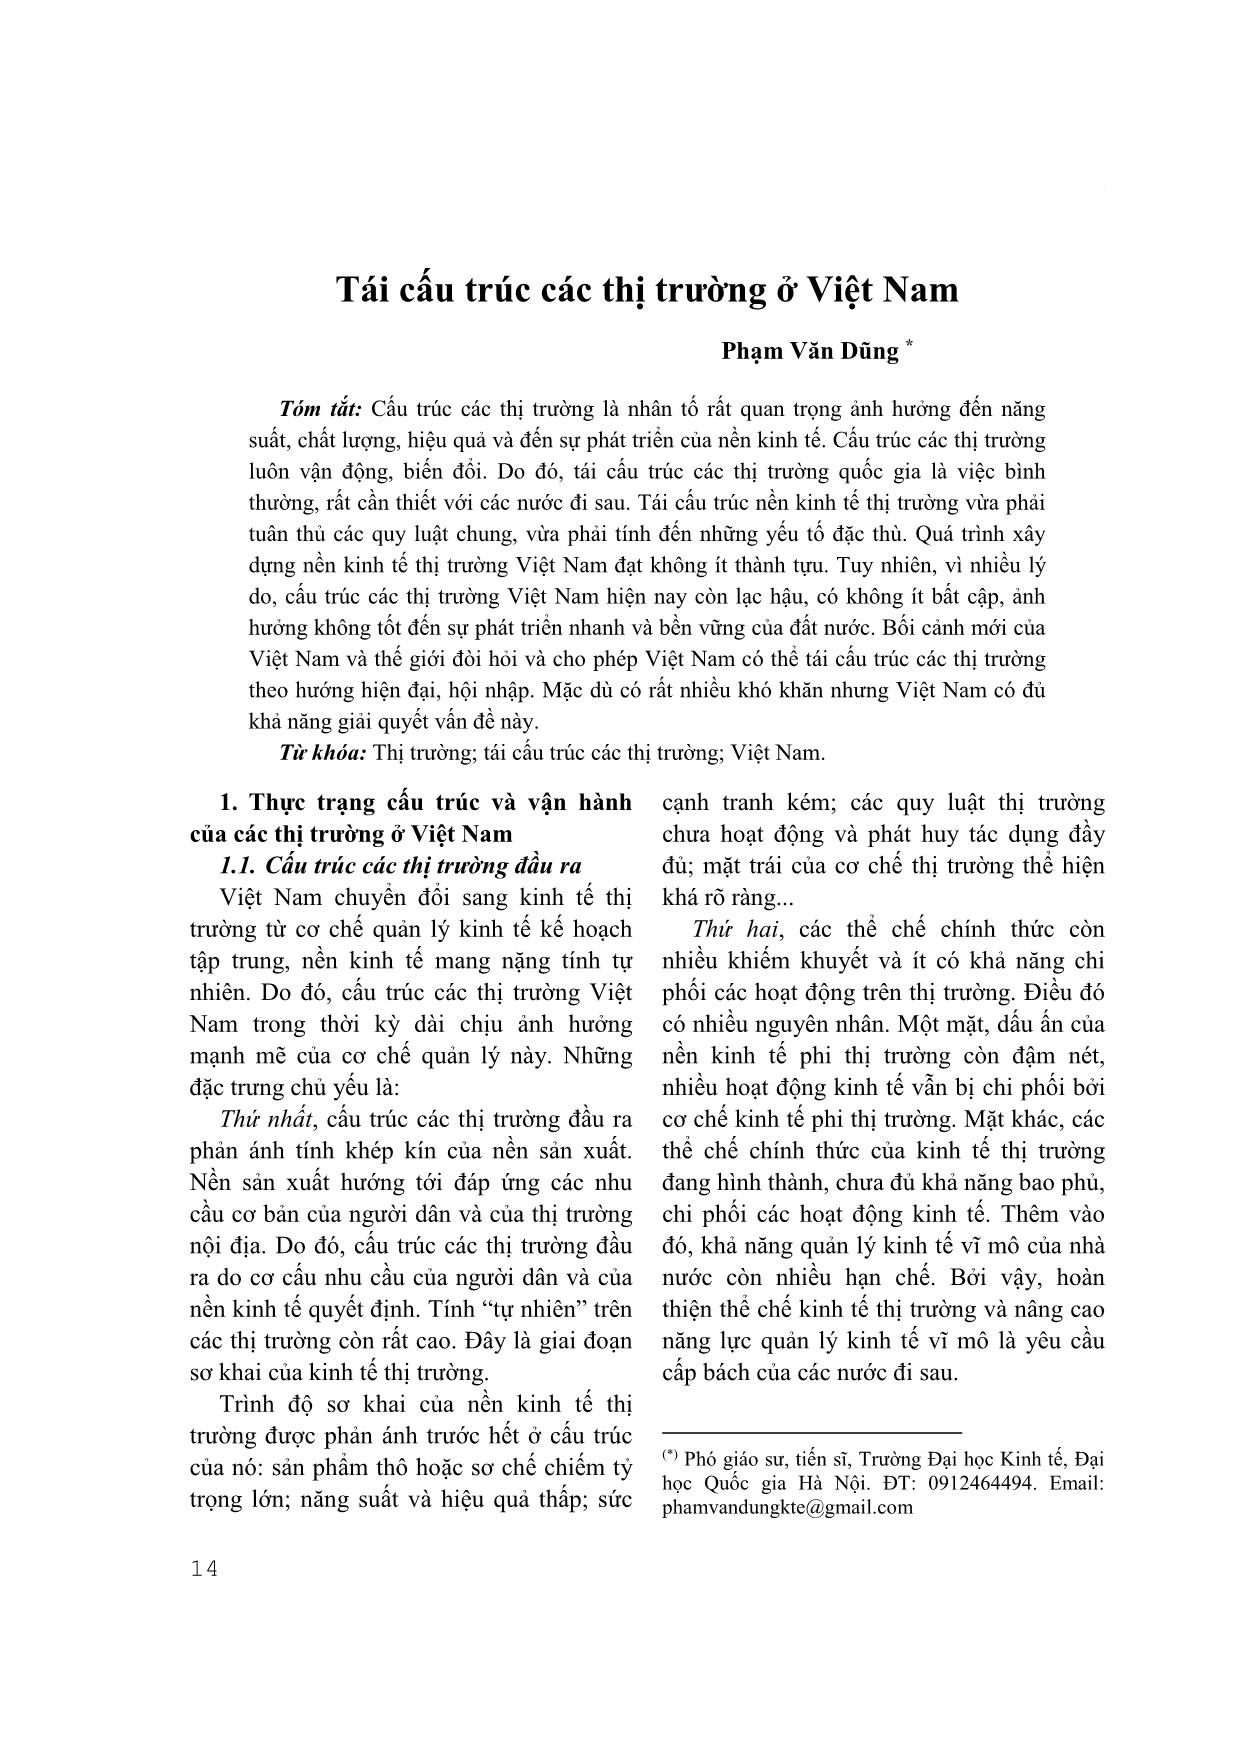 Tái cấu trúc các thị trường ở Việt Nam trang 1